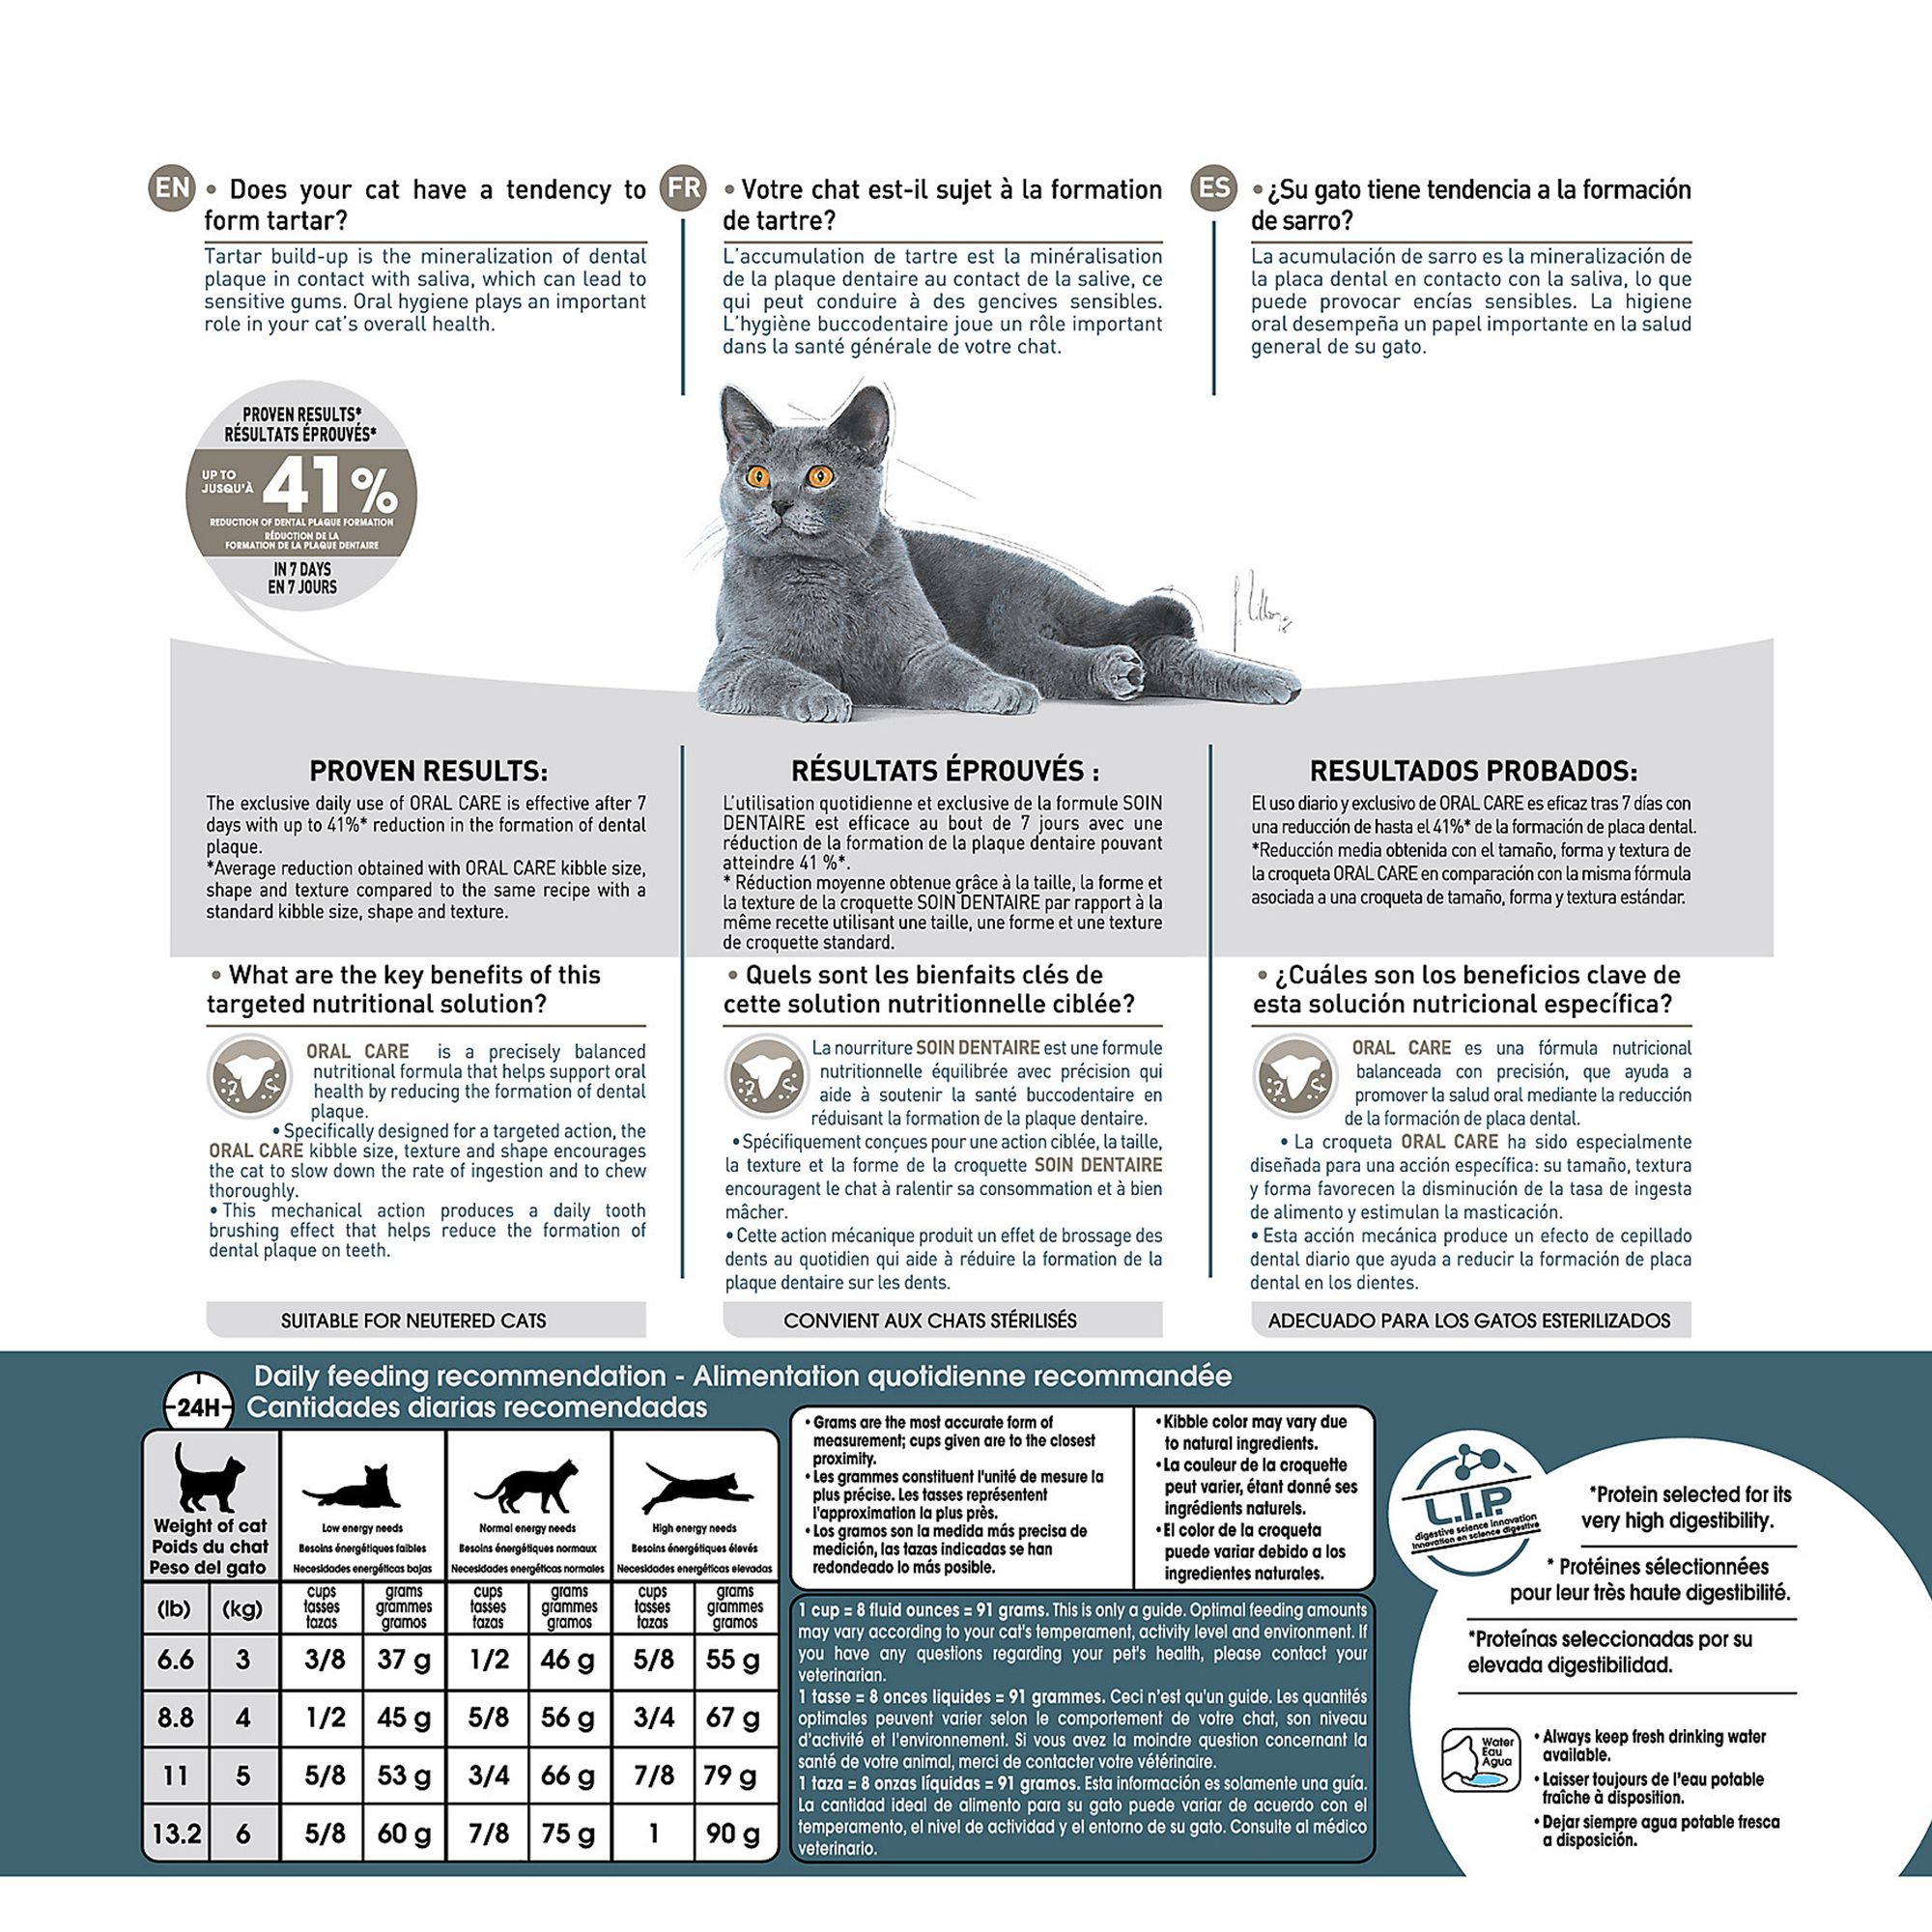 science diet feline oral care cat food